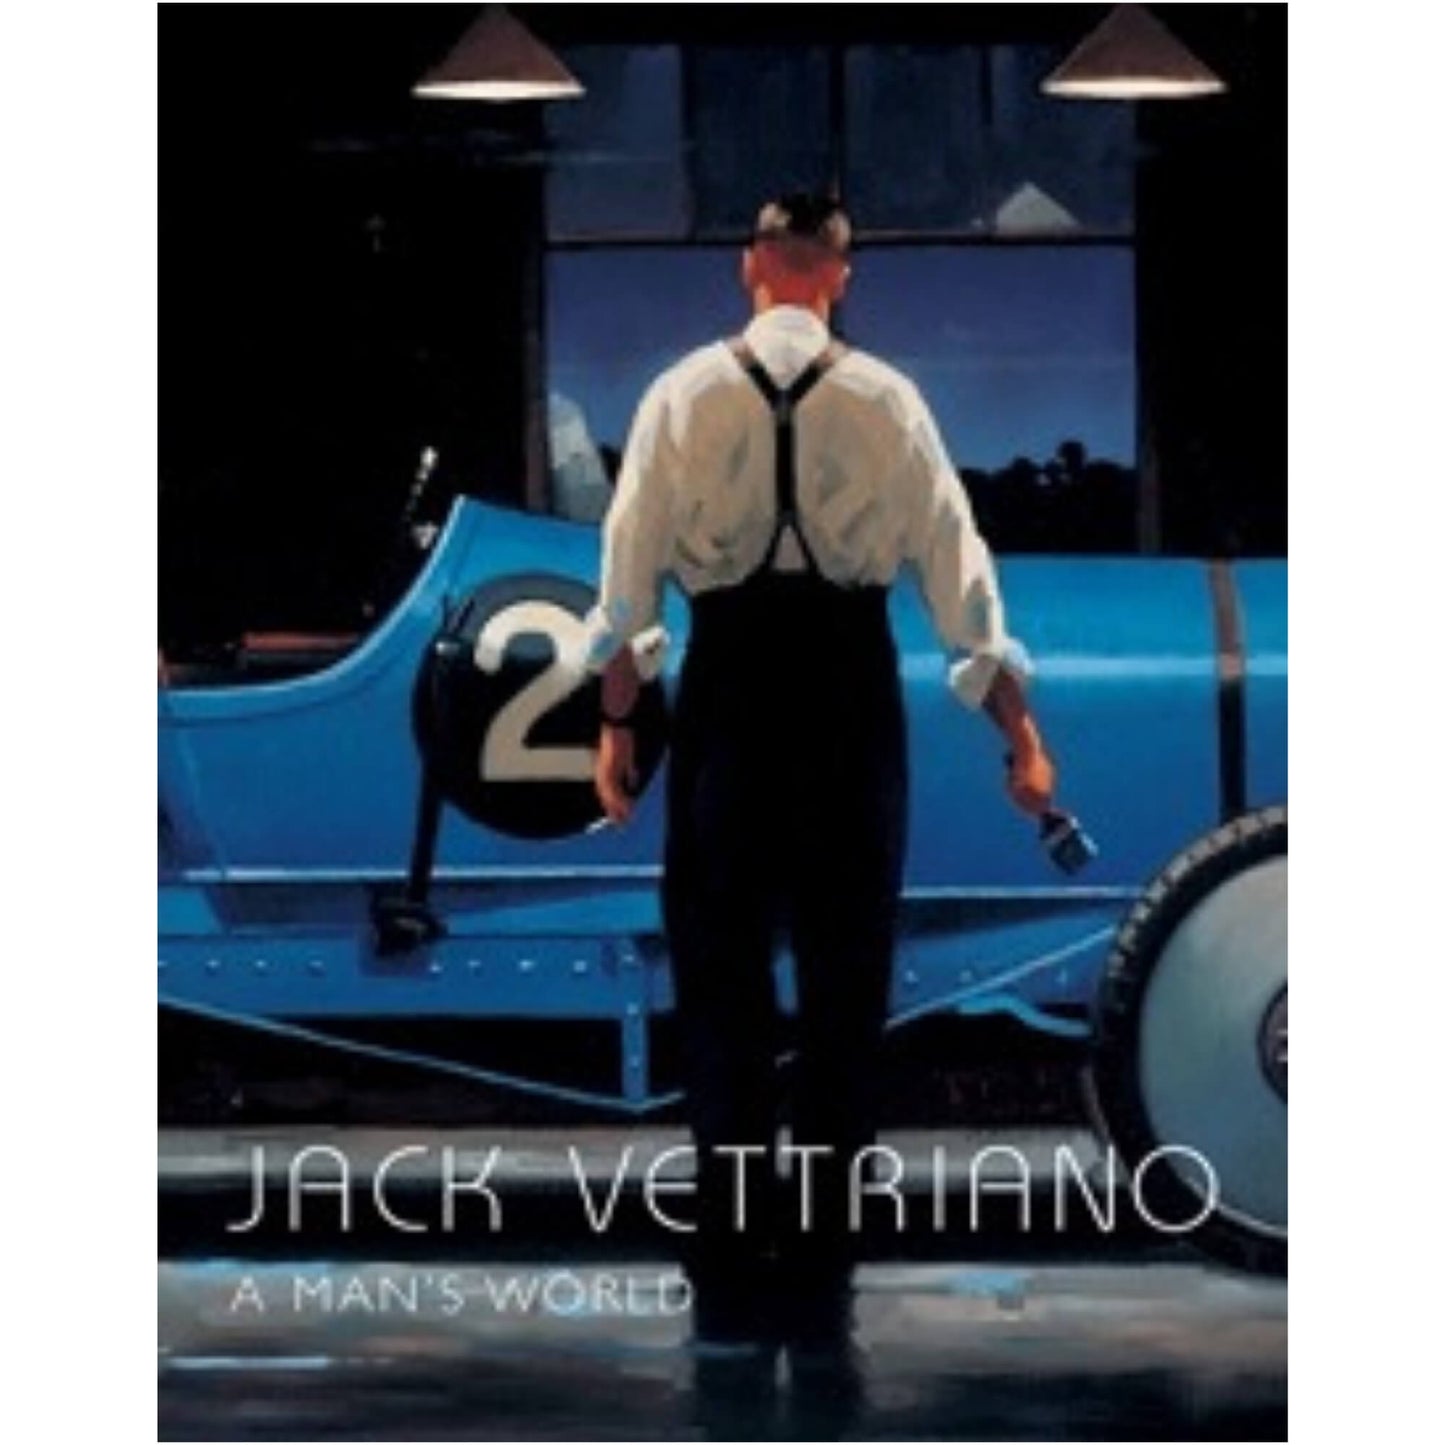 A Man's World Jack Vettriano